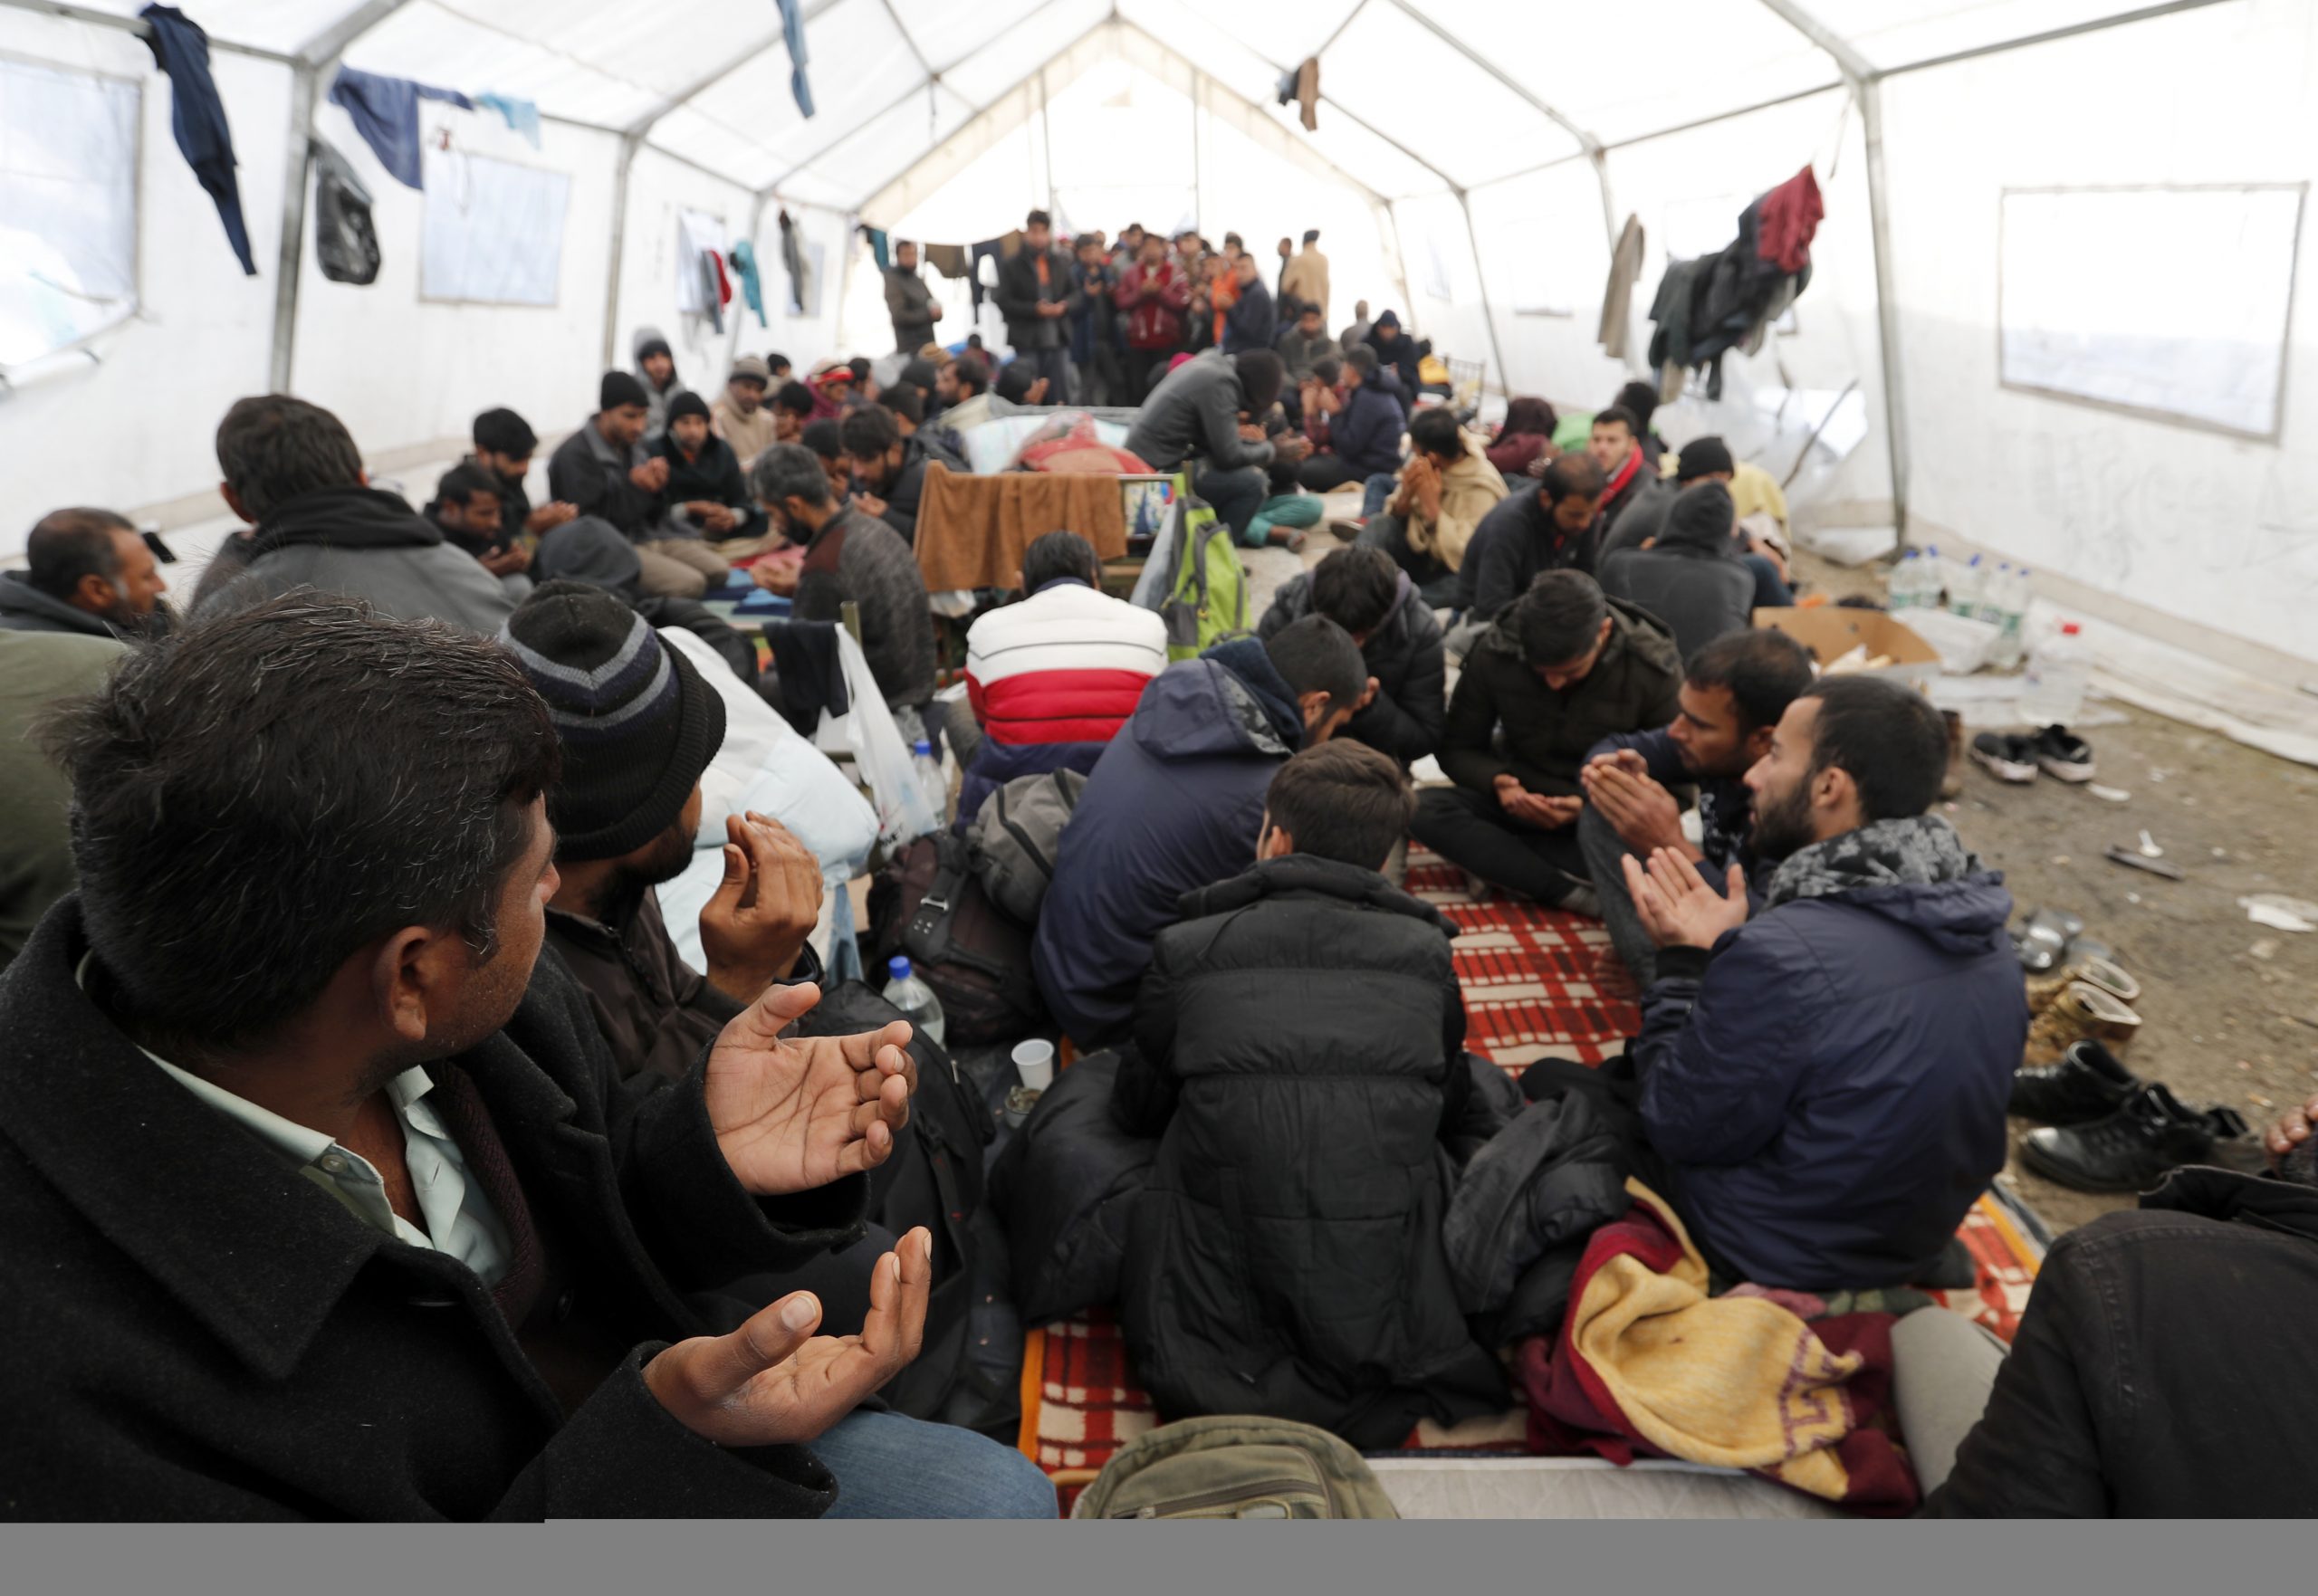 EU: Izbeglički kamp kod Bihaća mora biti ukinut, potreban bolji smeštaj (FOTO) 5